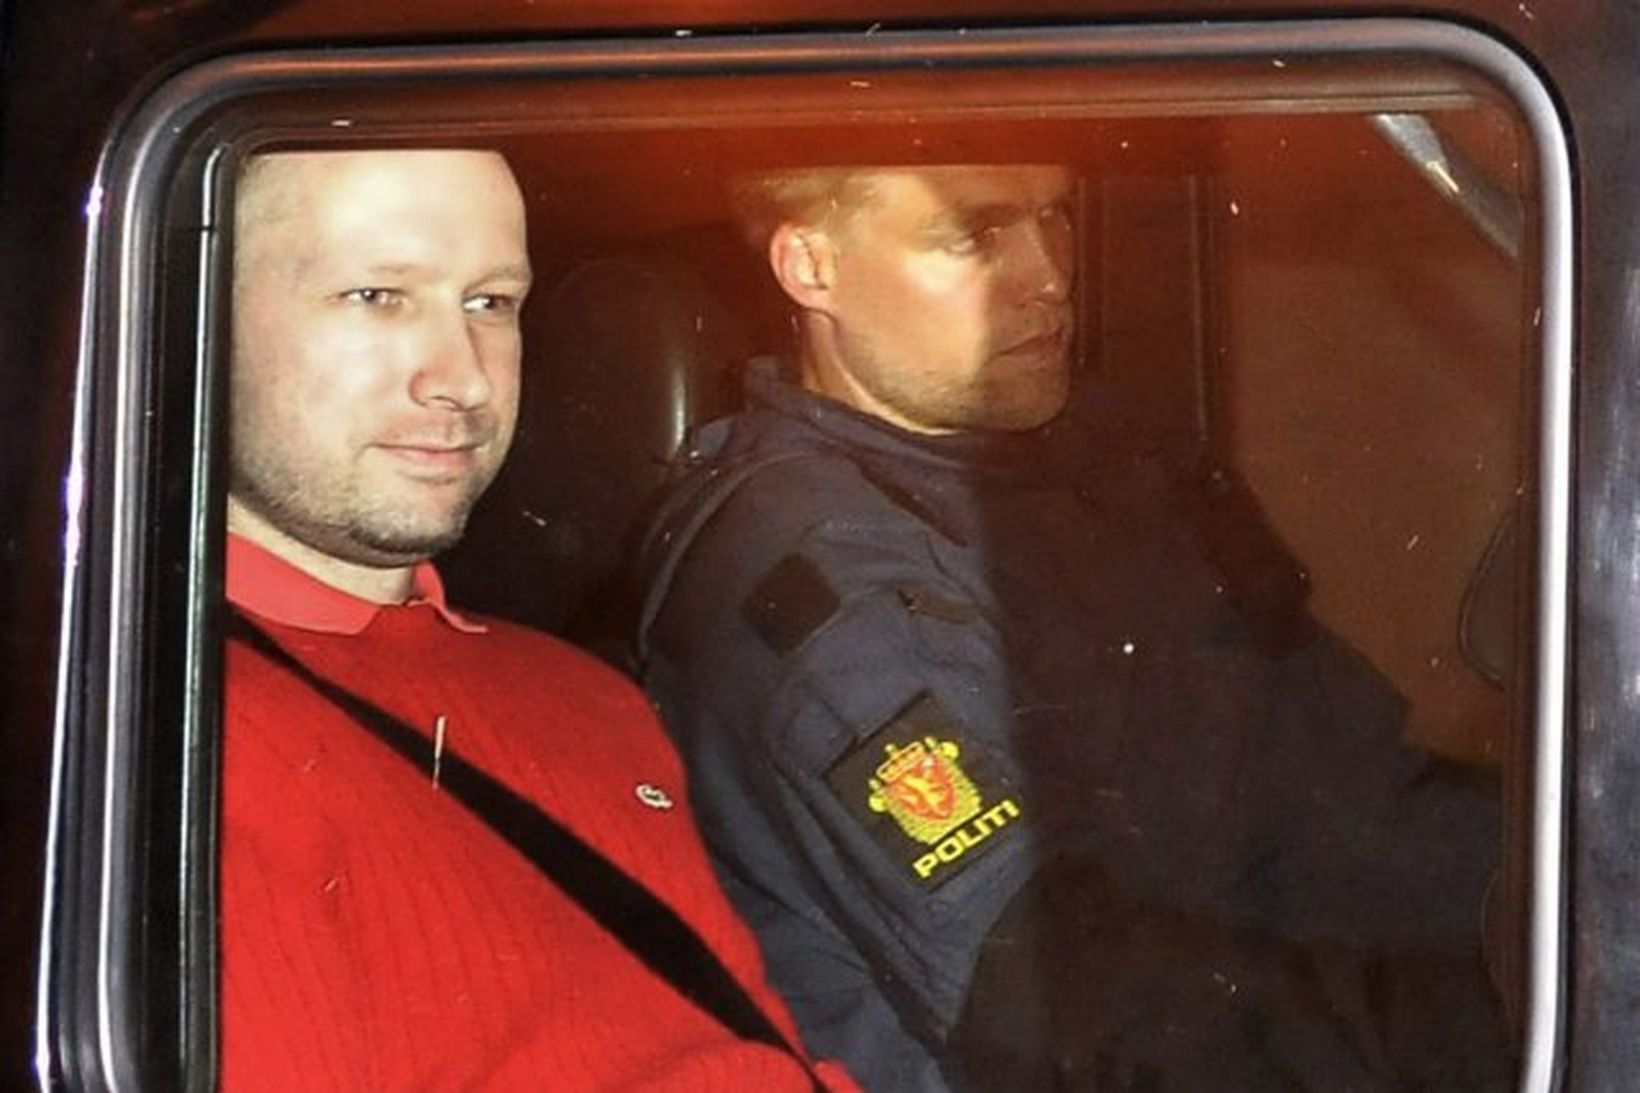 Hryðjuverkamaðurinn Anders Behring Breivik í haldi lögreglu.